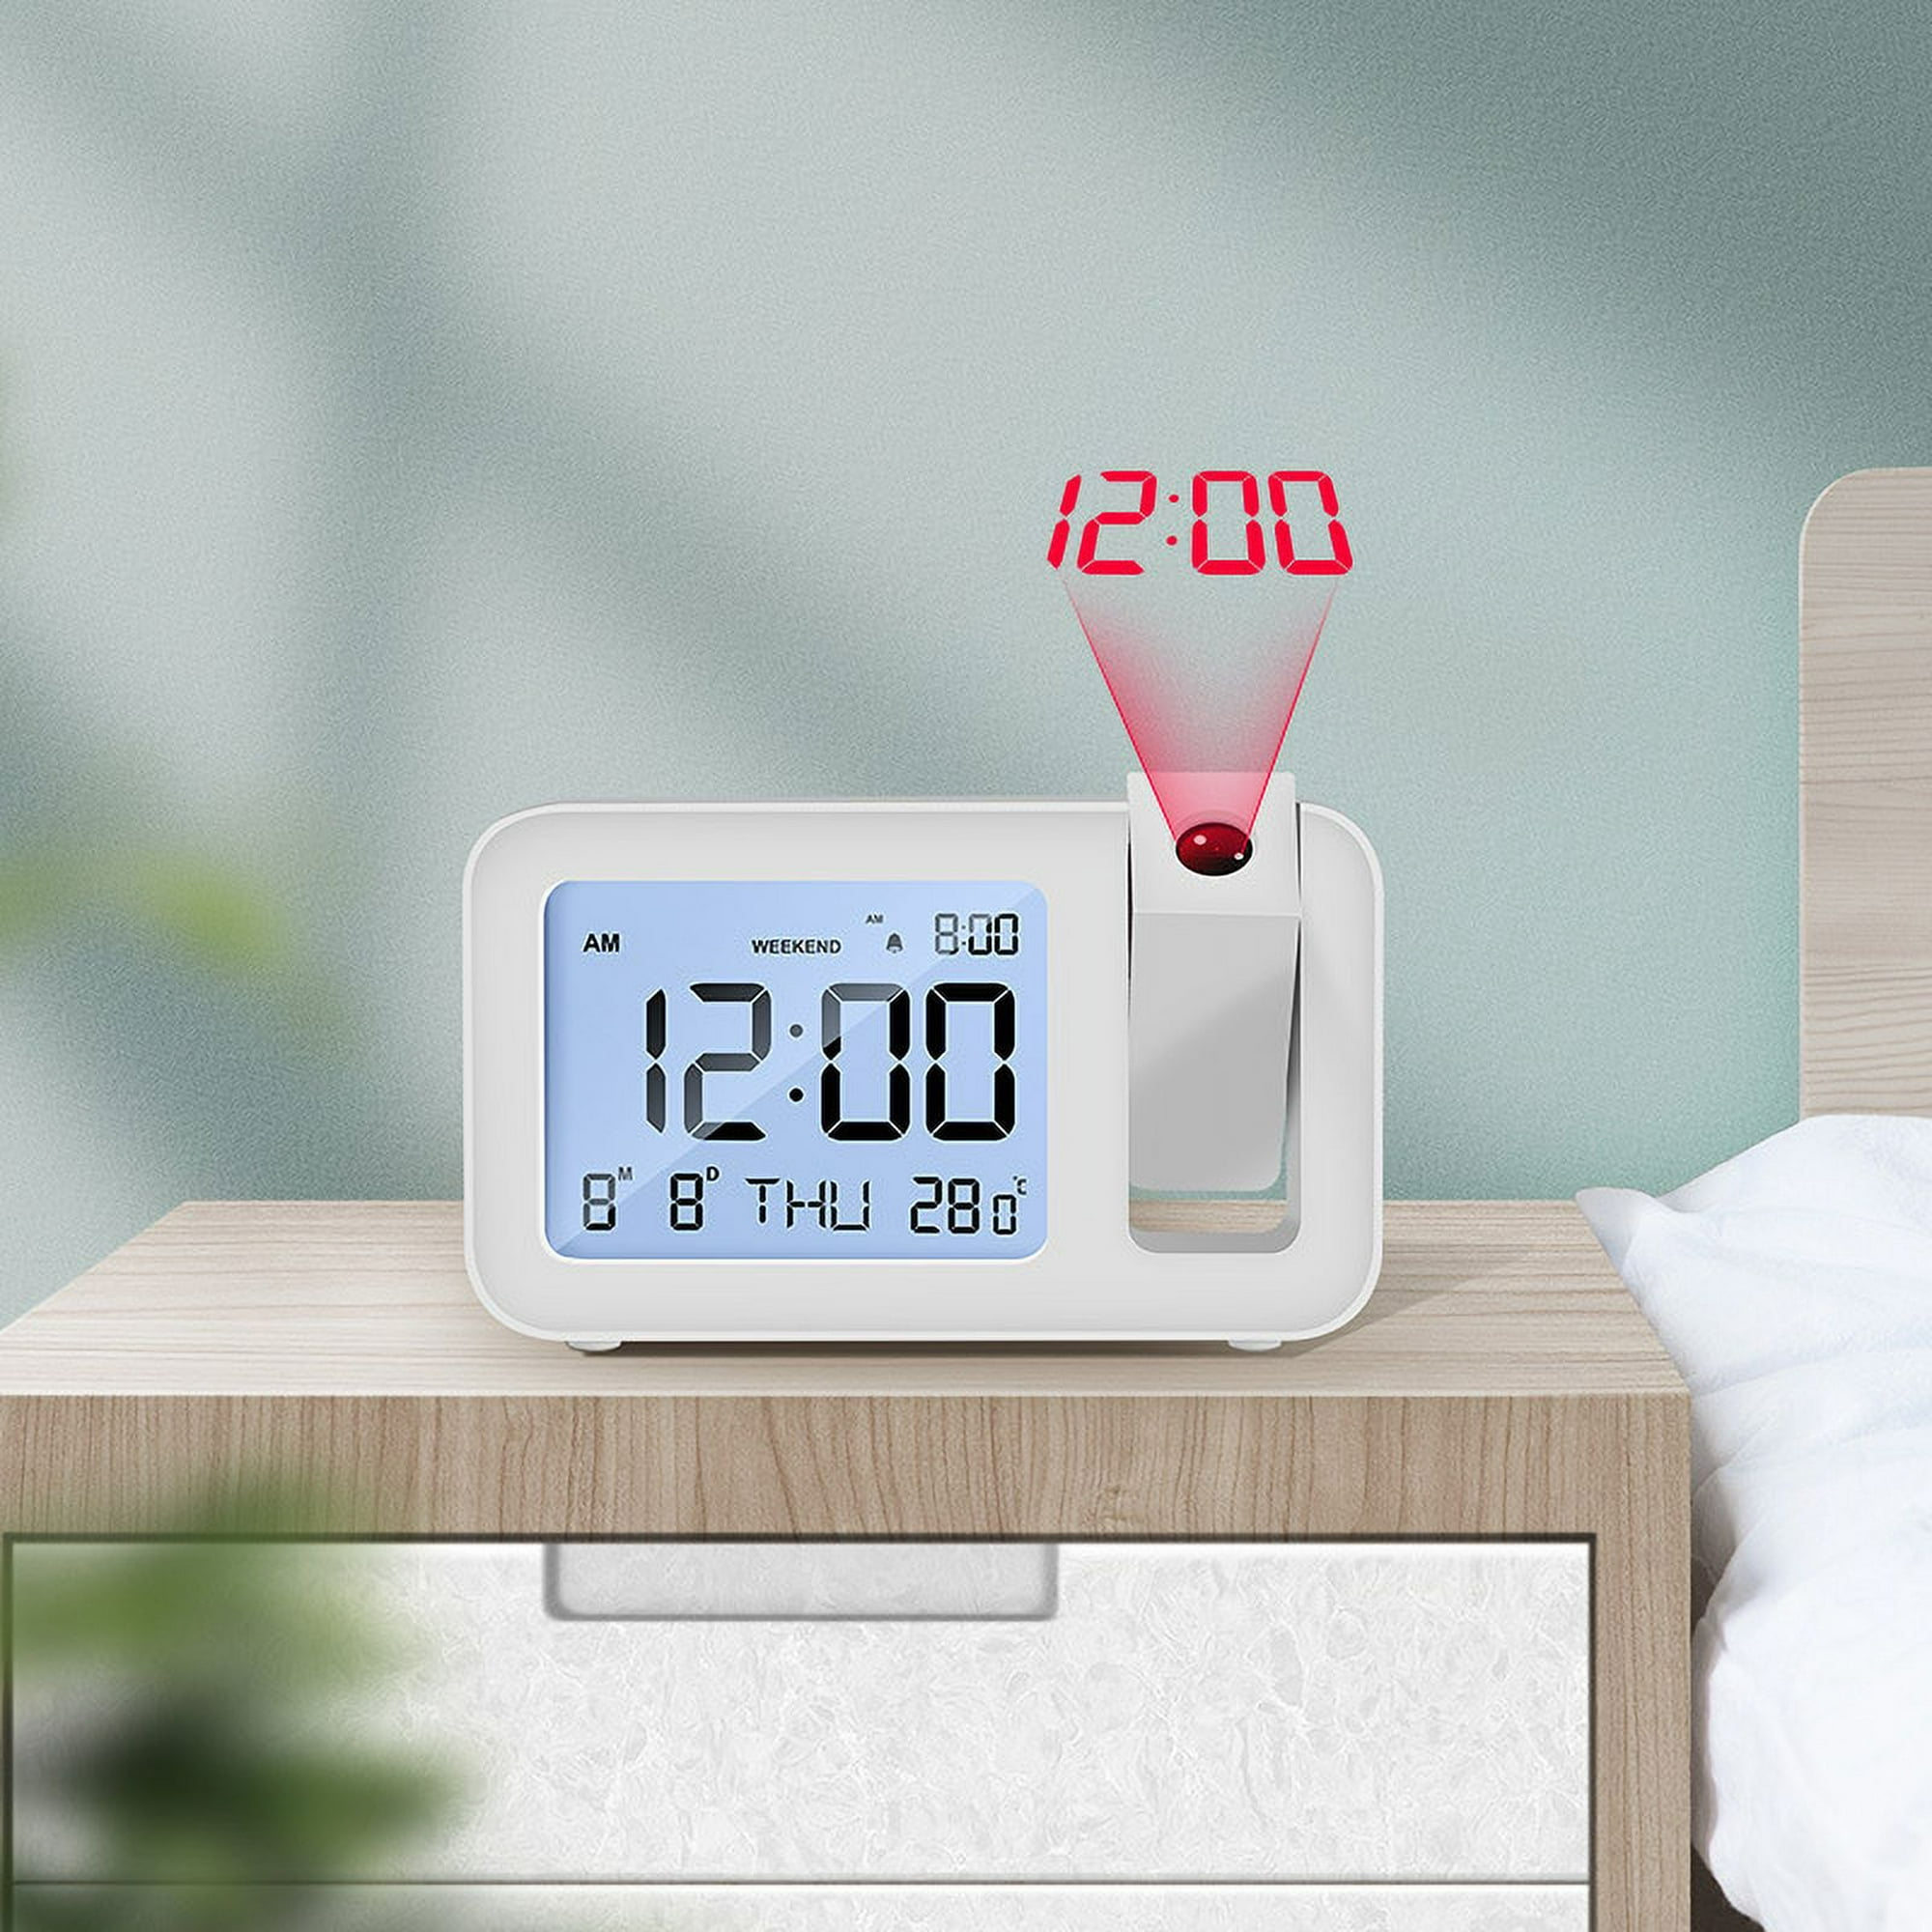 Reloj despertador de proyección para techo de dormitorio, proyector de  reloj digital con modo de día de semana/fin de semana, fecha, temperatura